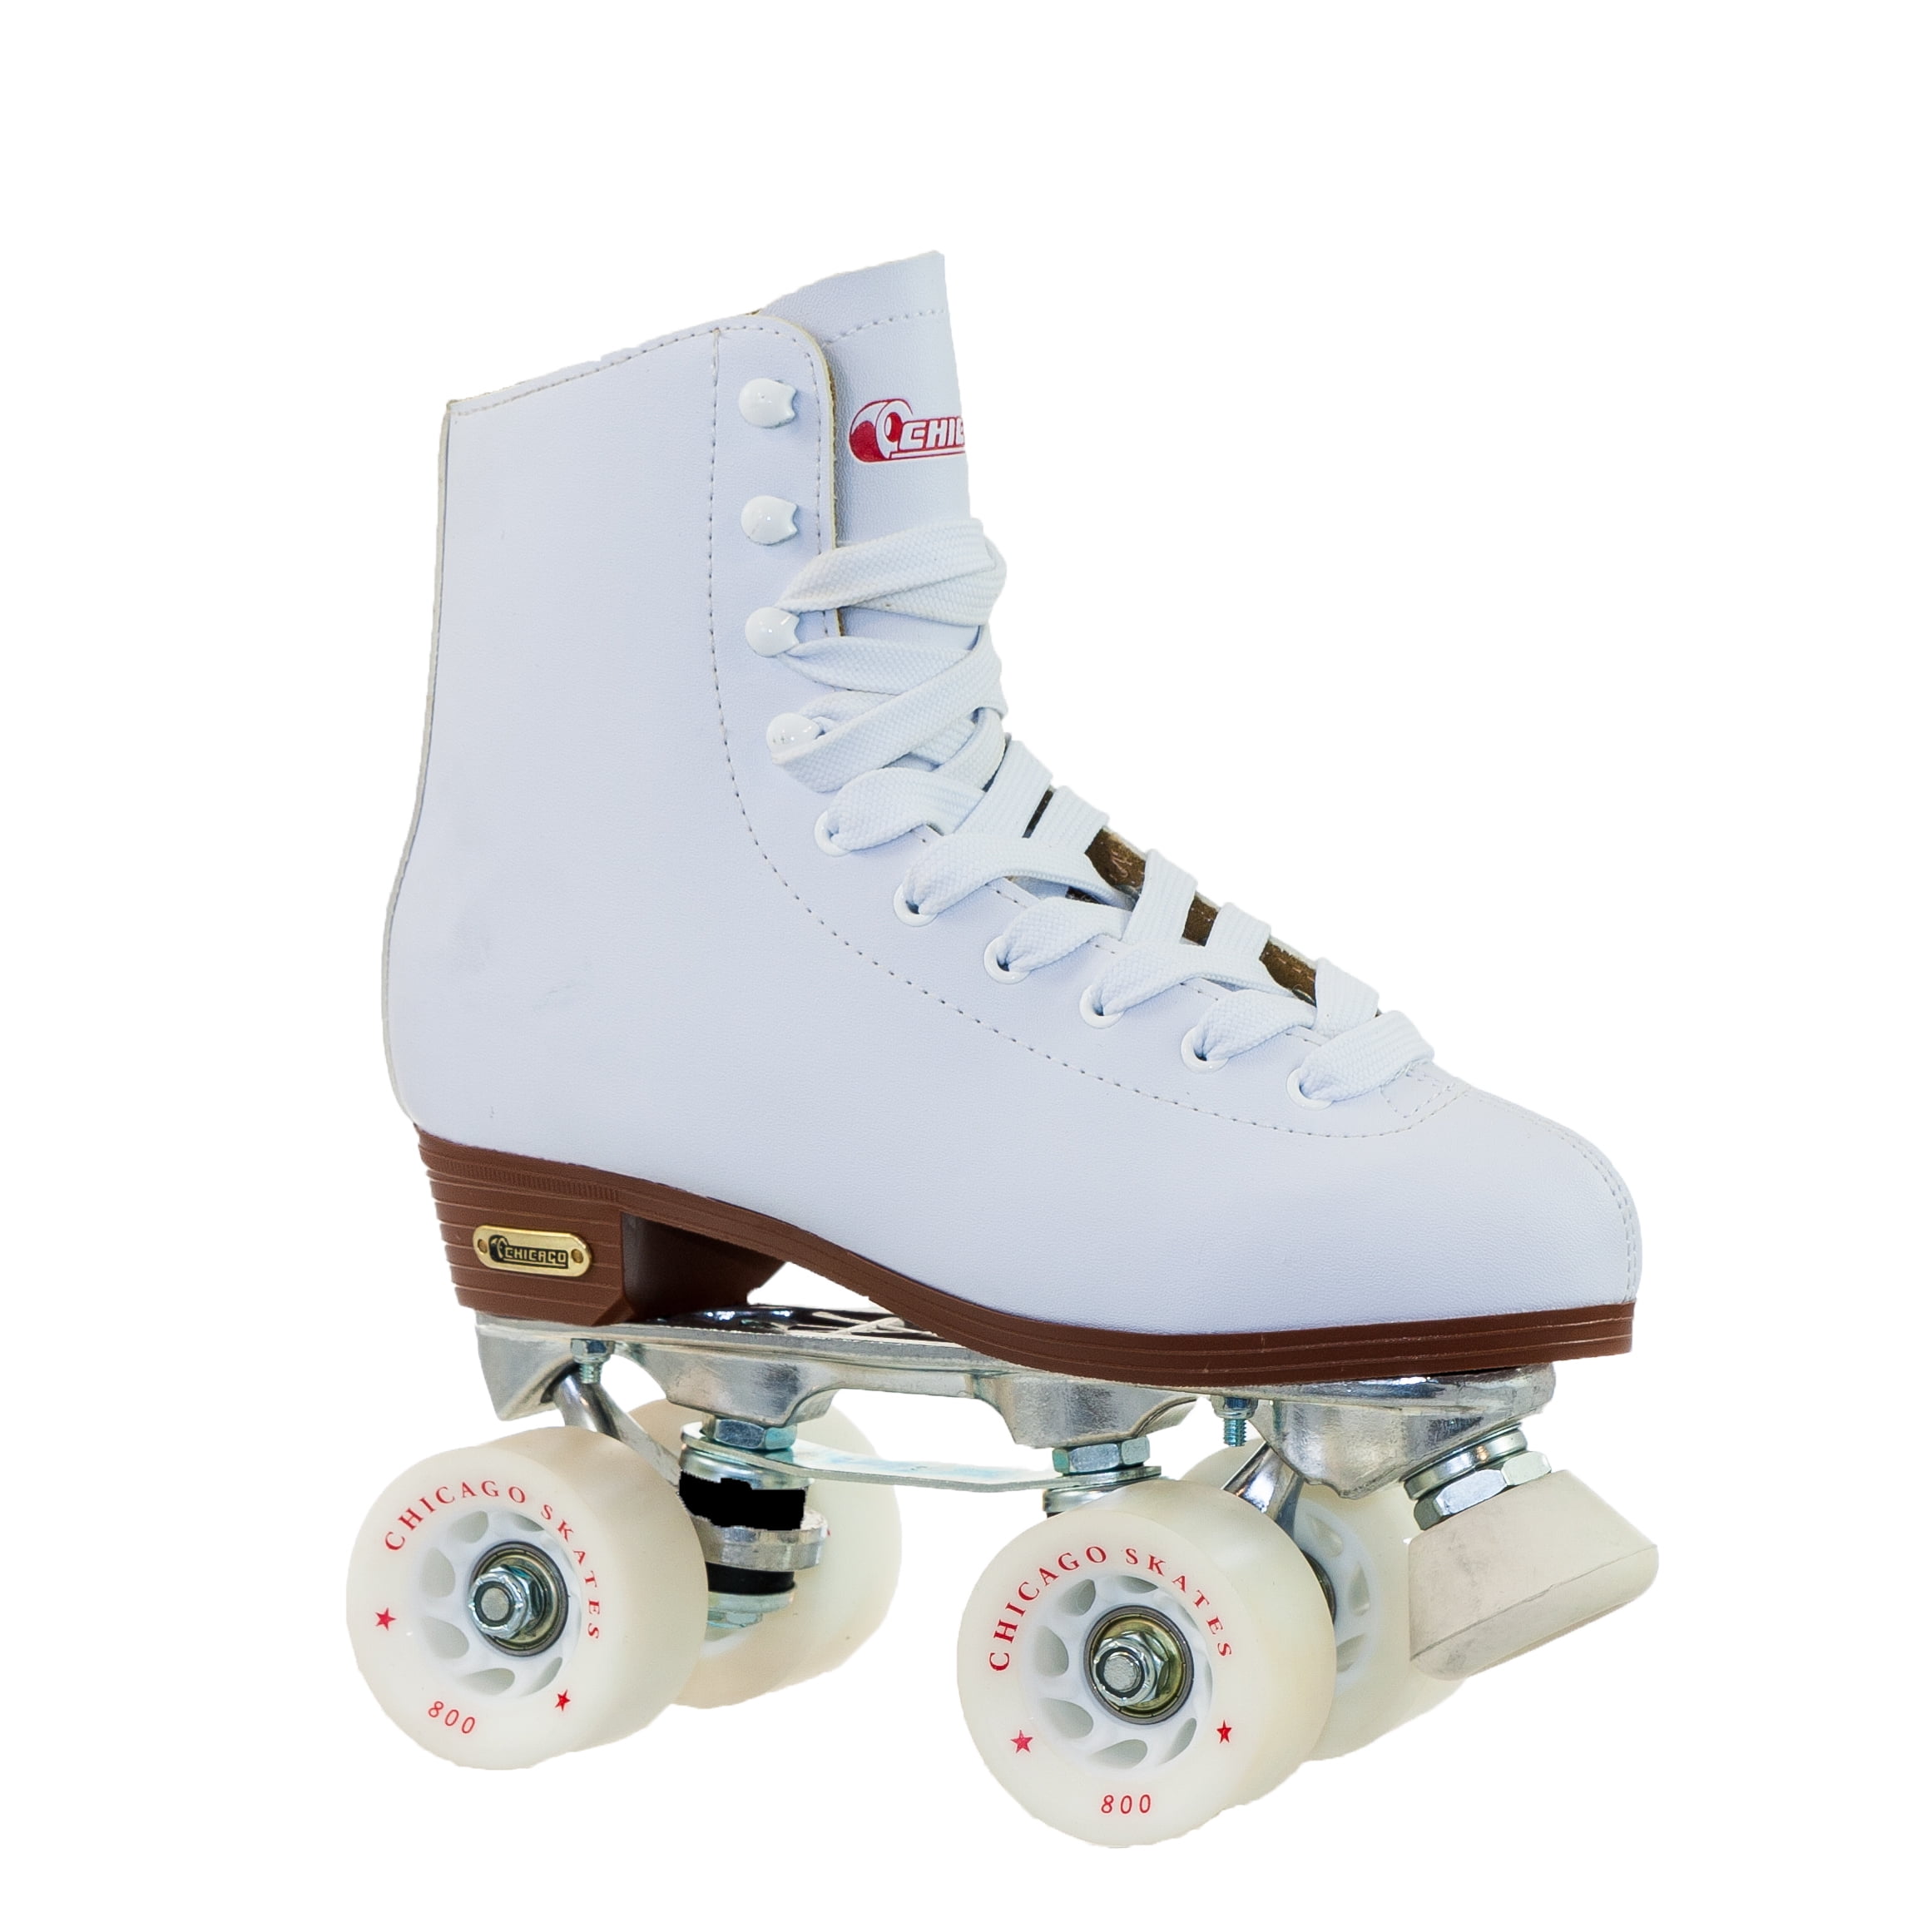 Chicago Skates Girls White Rink Skate CRS1900 Size J13 for sale online 